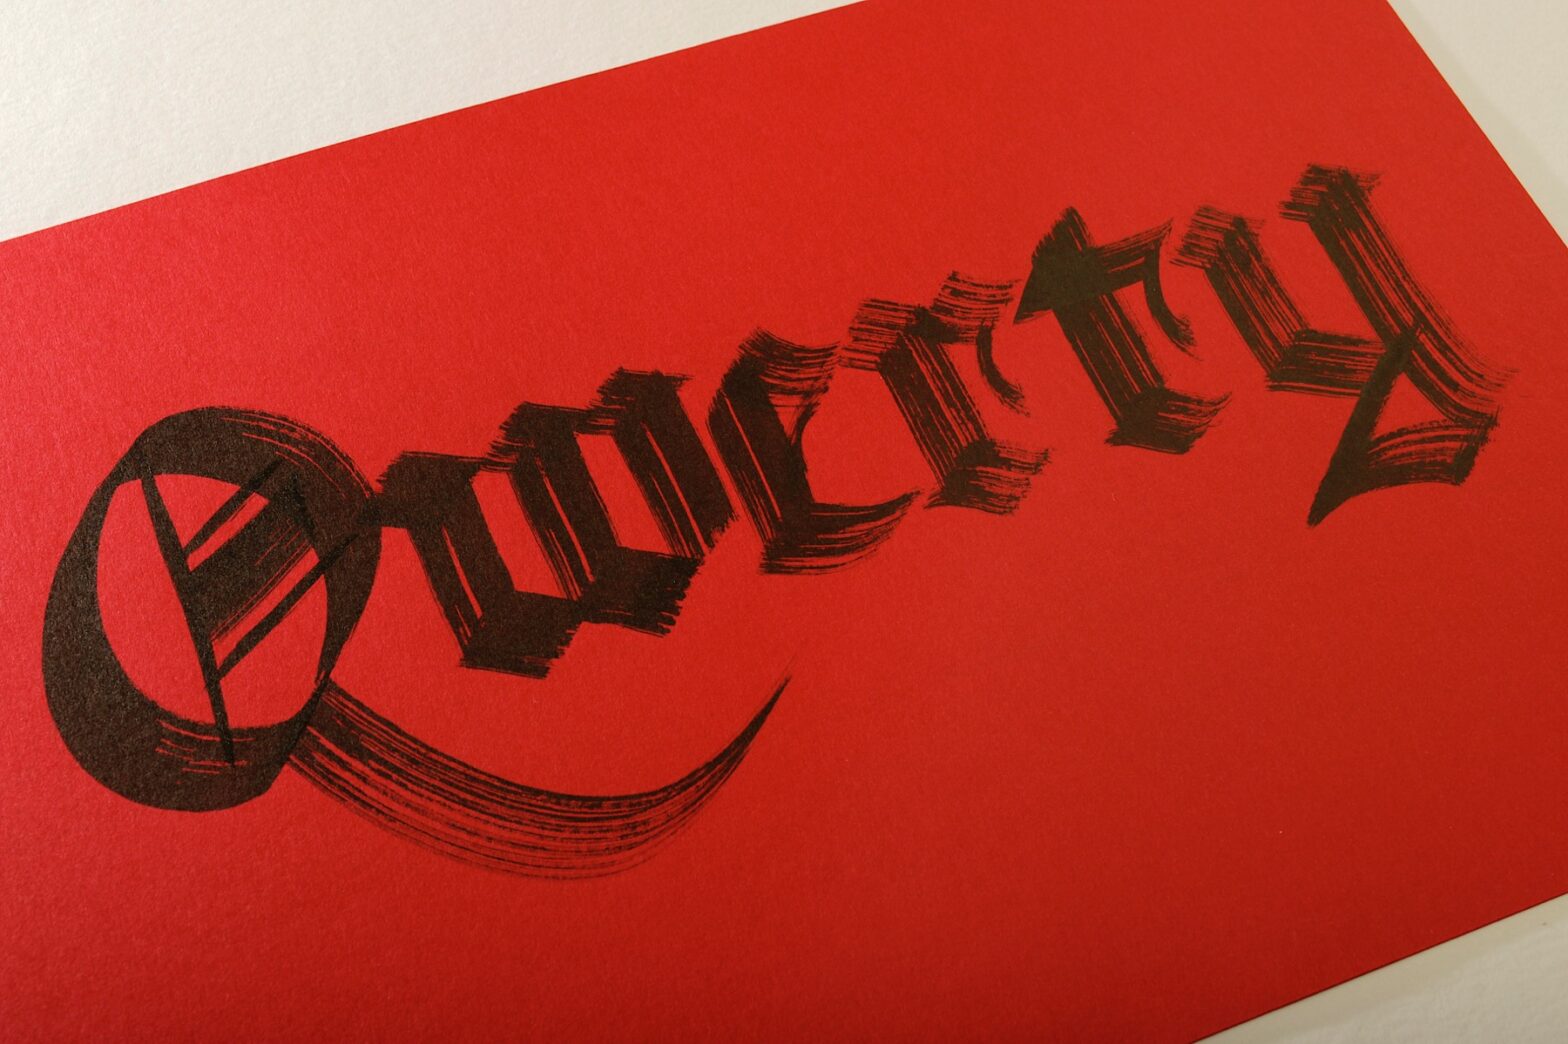 Trabalho de caligrafia em preto sobre papel vermelho, onde está escrito “Qwerty” em letras góticas